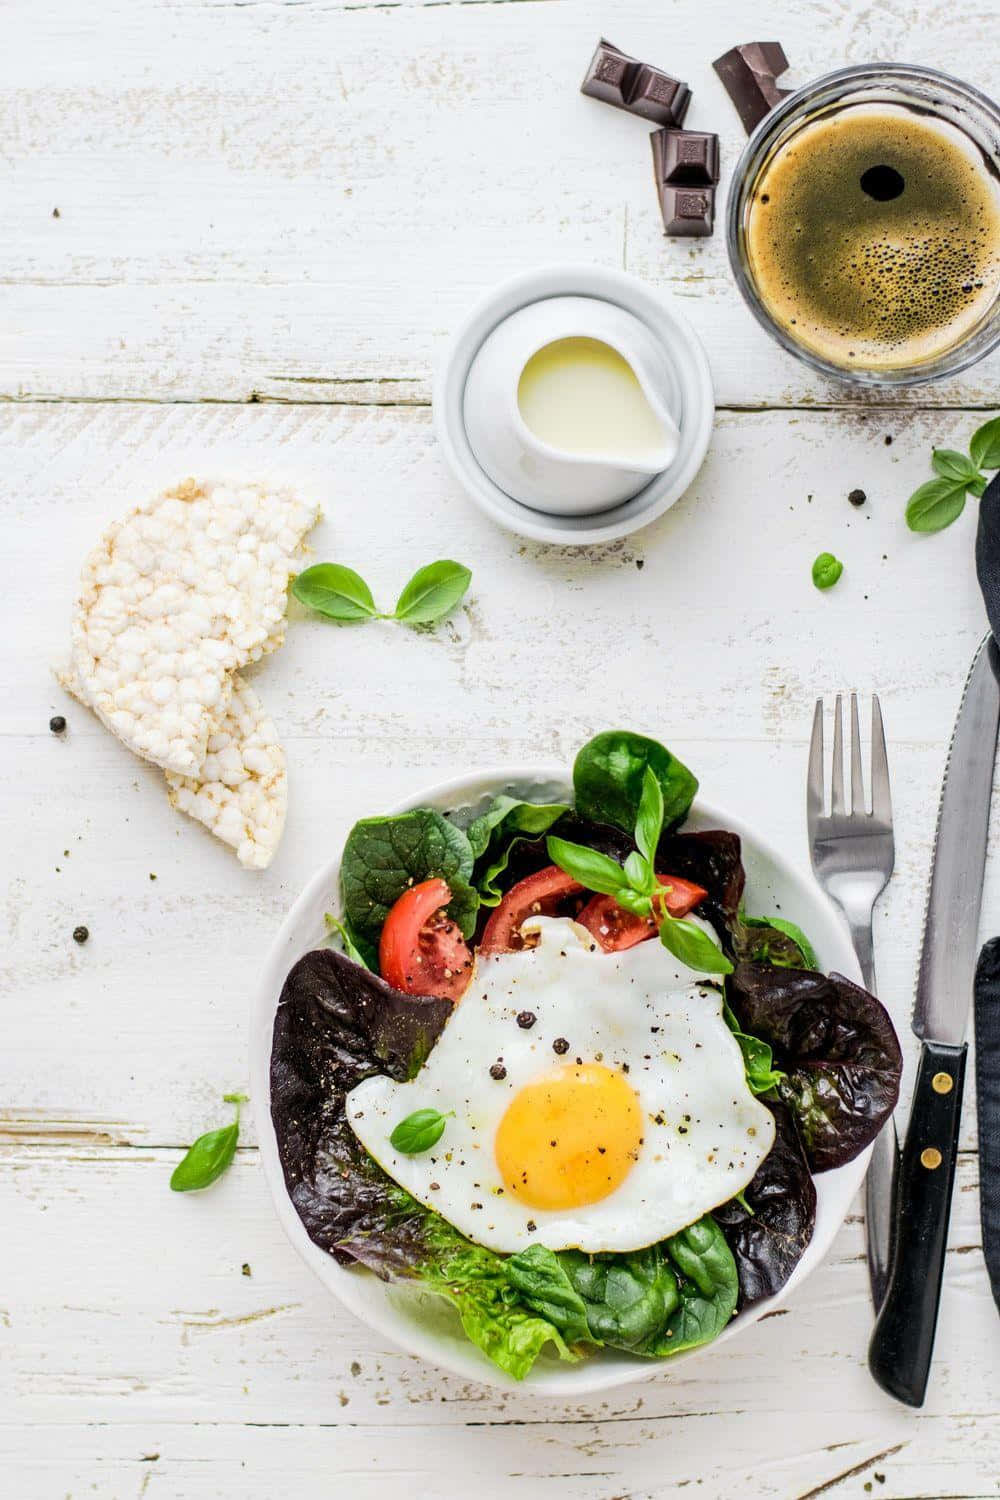 Ensaladade Comida Saludable Con Huevo En Una Imagen De Madera Blanca.